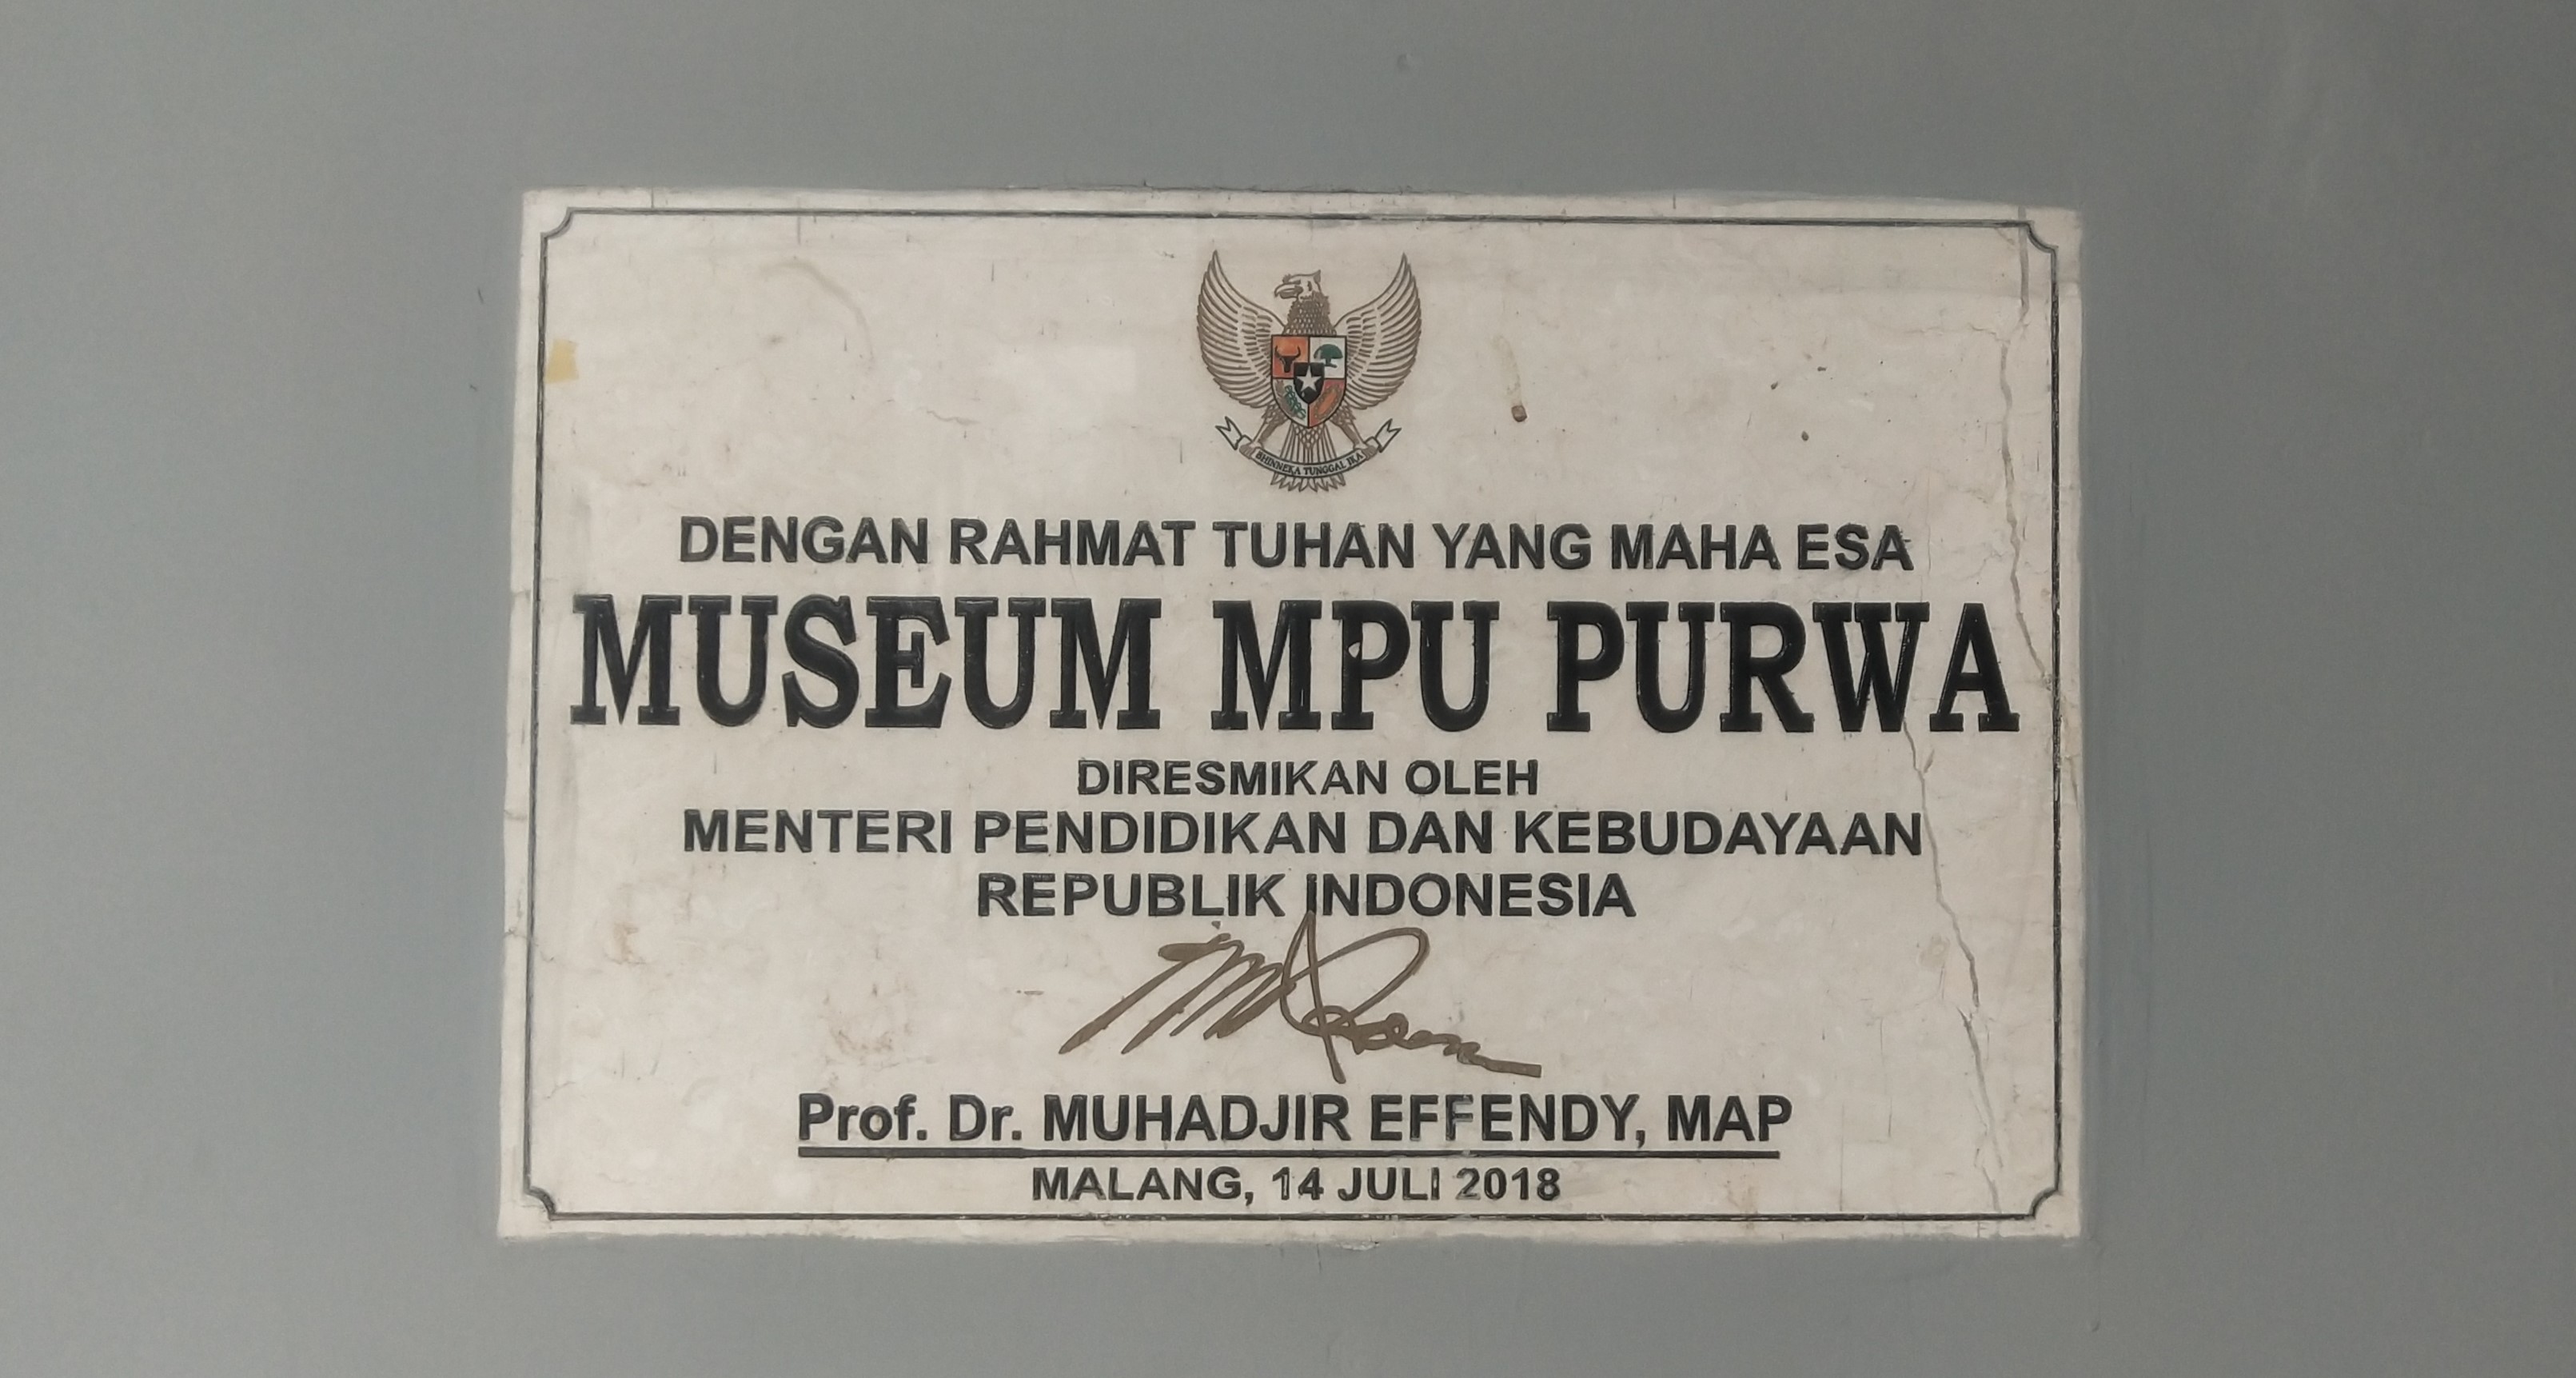 Museum Mpu Purwa telah diresmikan pada tahun 2018 oleh Menteri Pendidikan dan Kebudayaan RI.